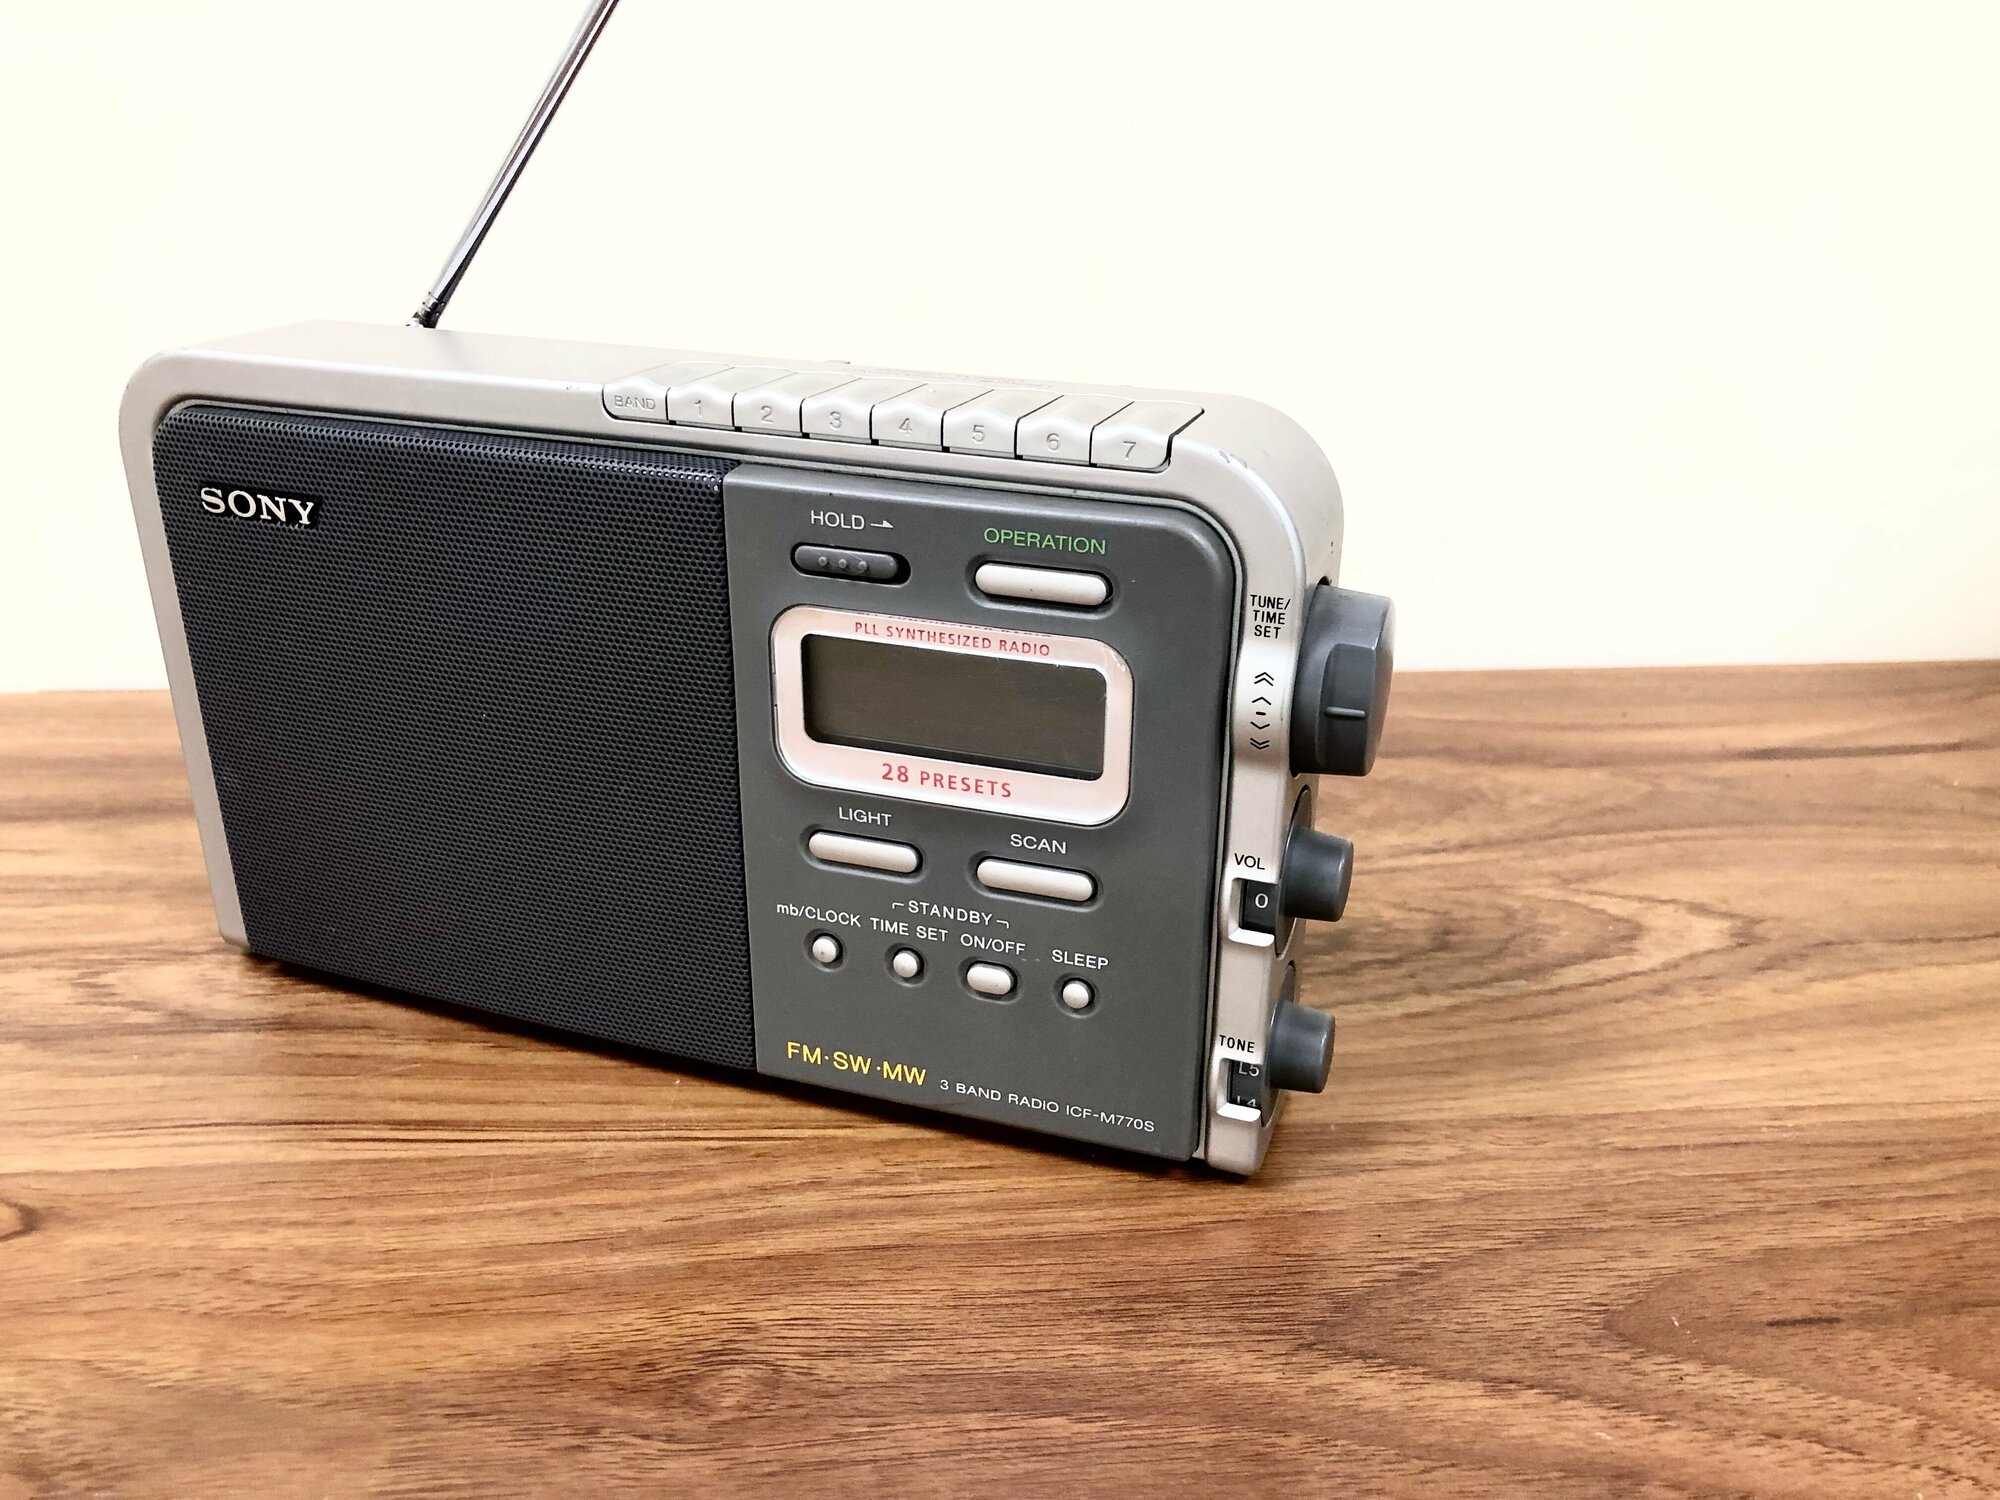 Радио ретро цифровой Sony ICF-M770S